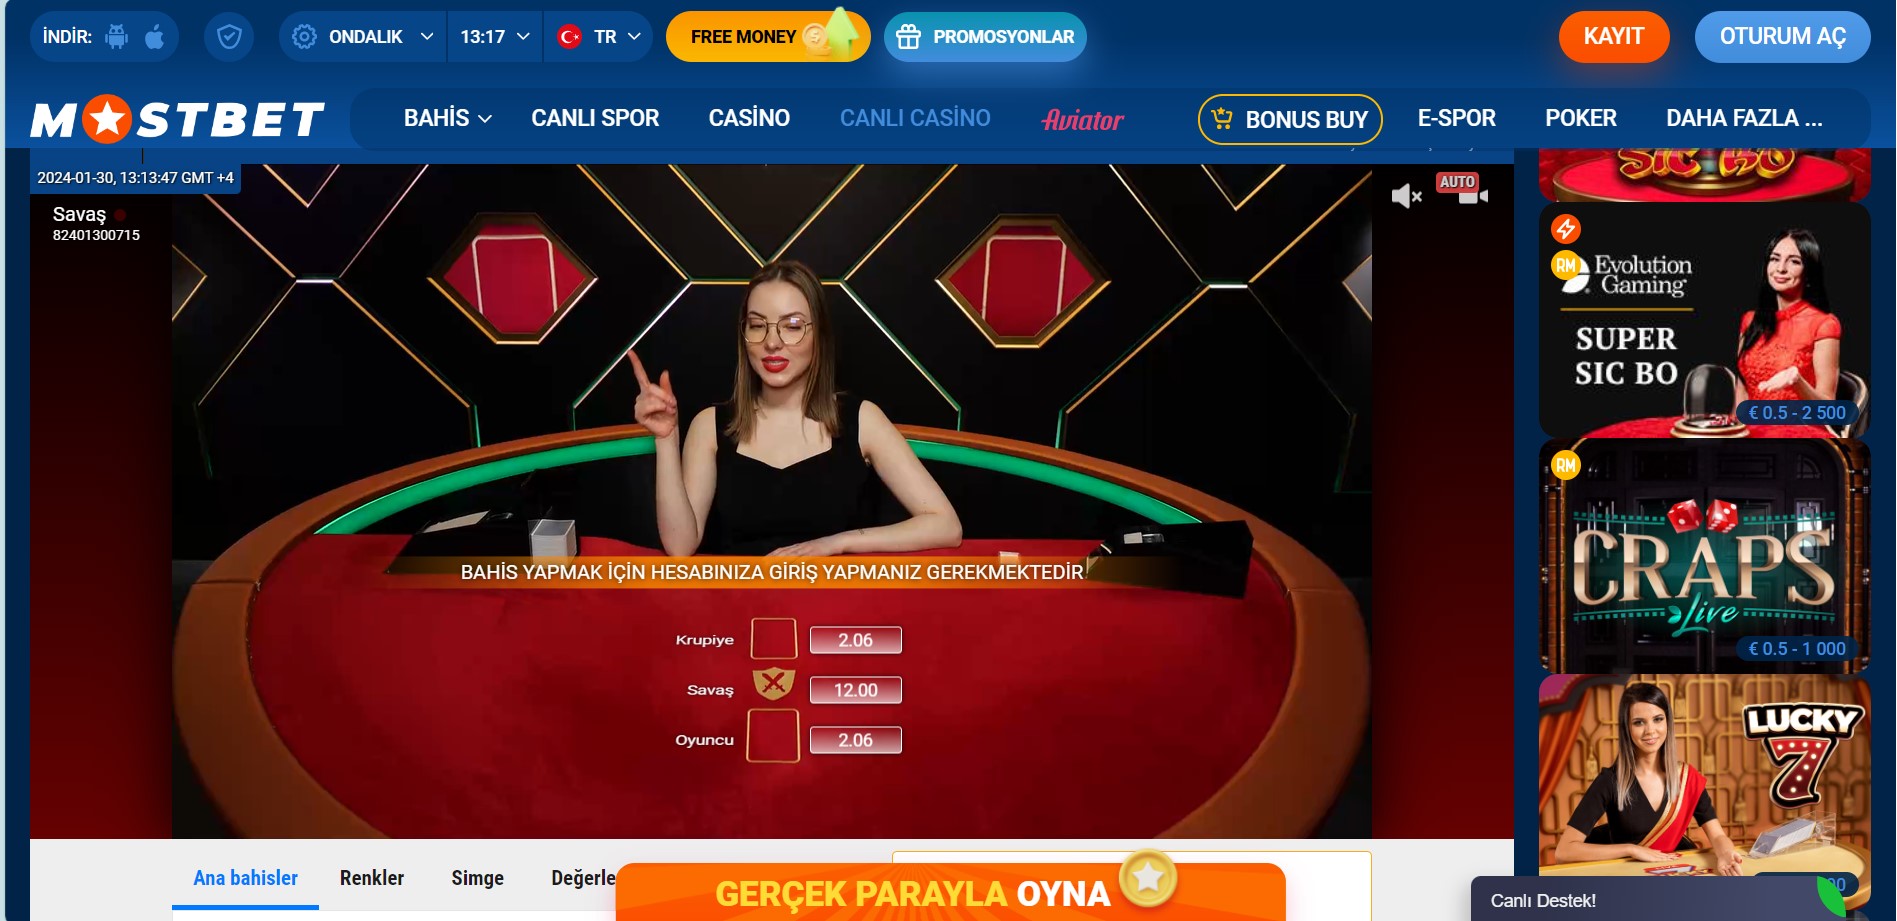 7 Easy Ways To Make Türk oyuncuları için çevrimiçi casinolarda sadakat programlarının faydaları Faster